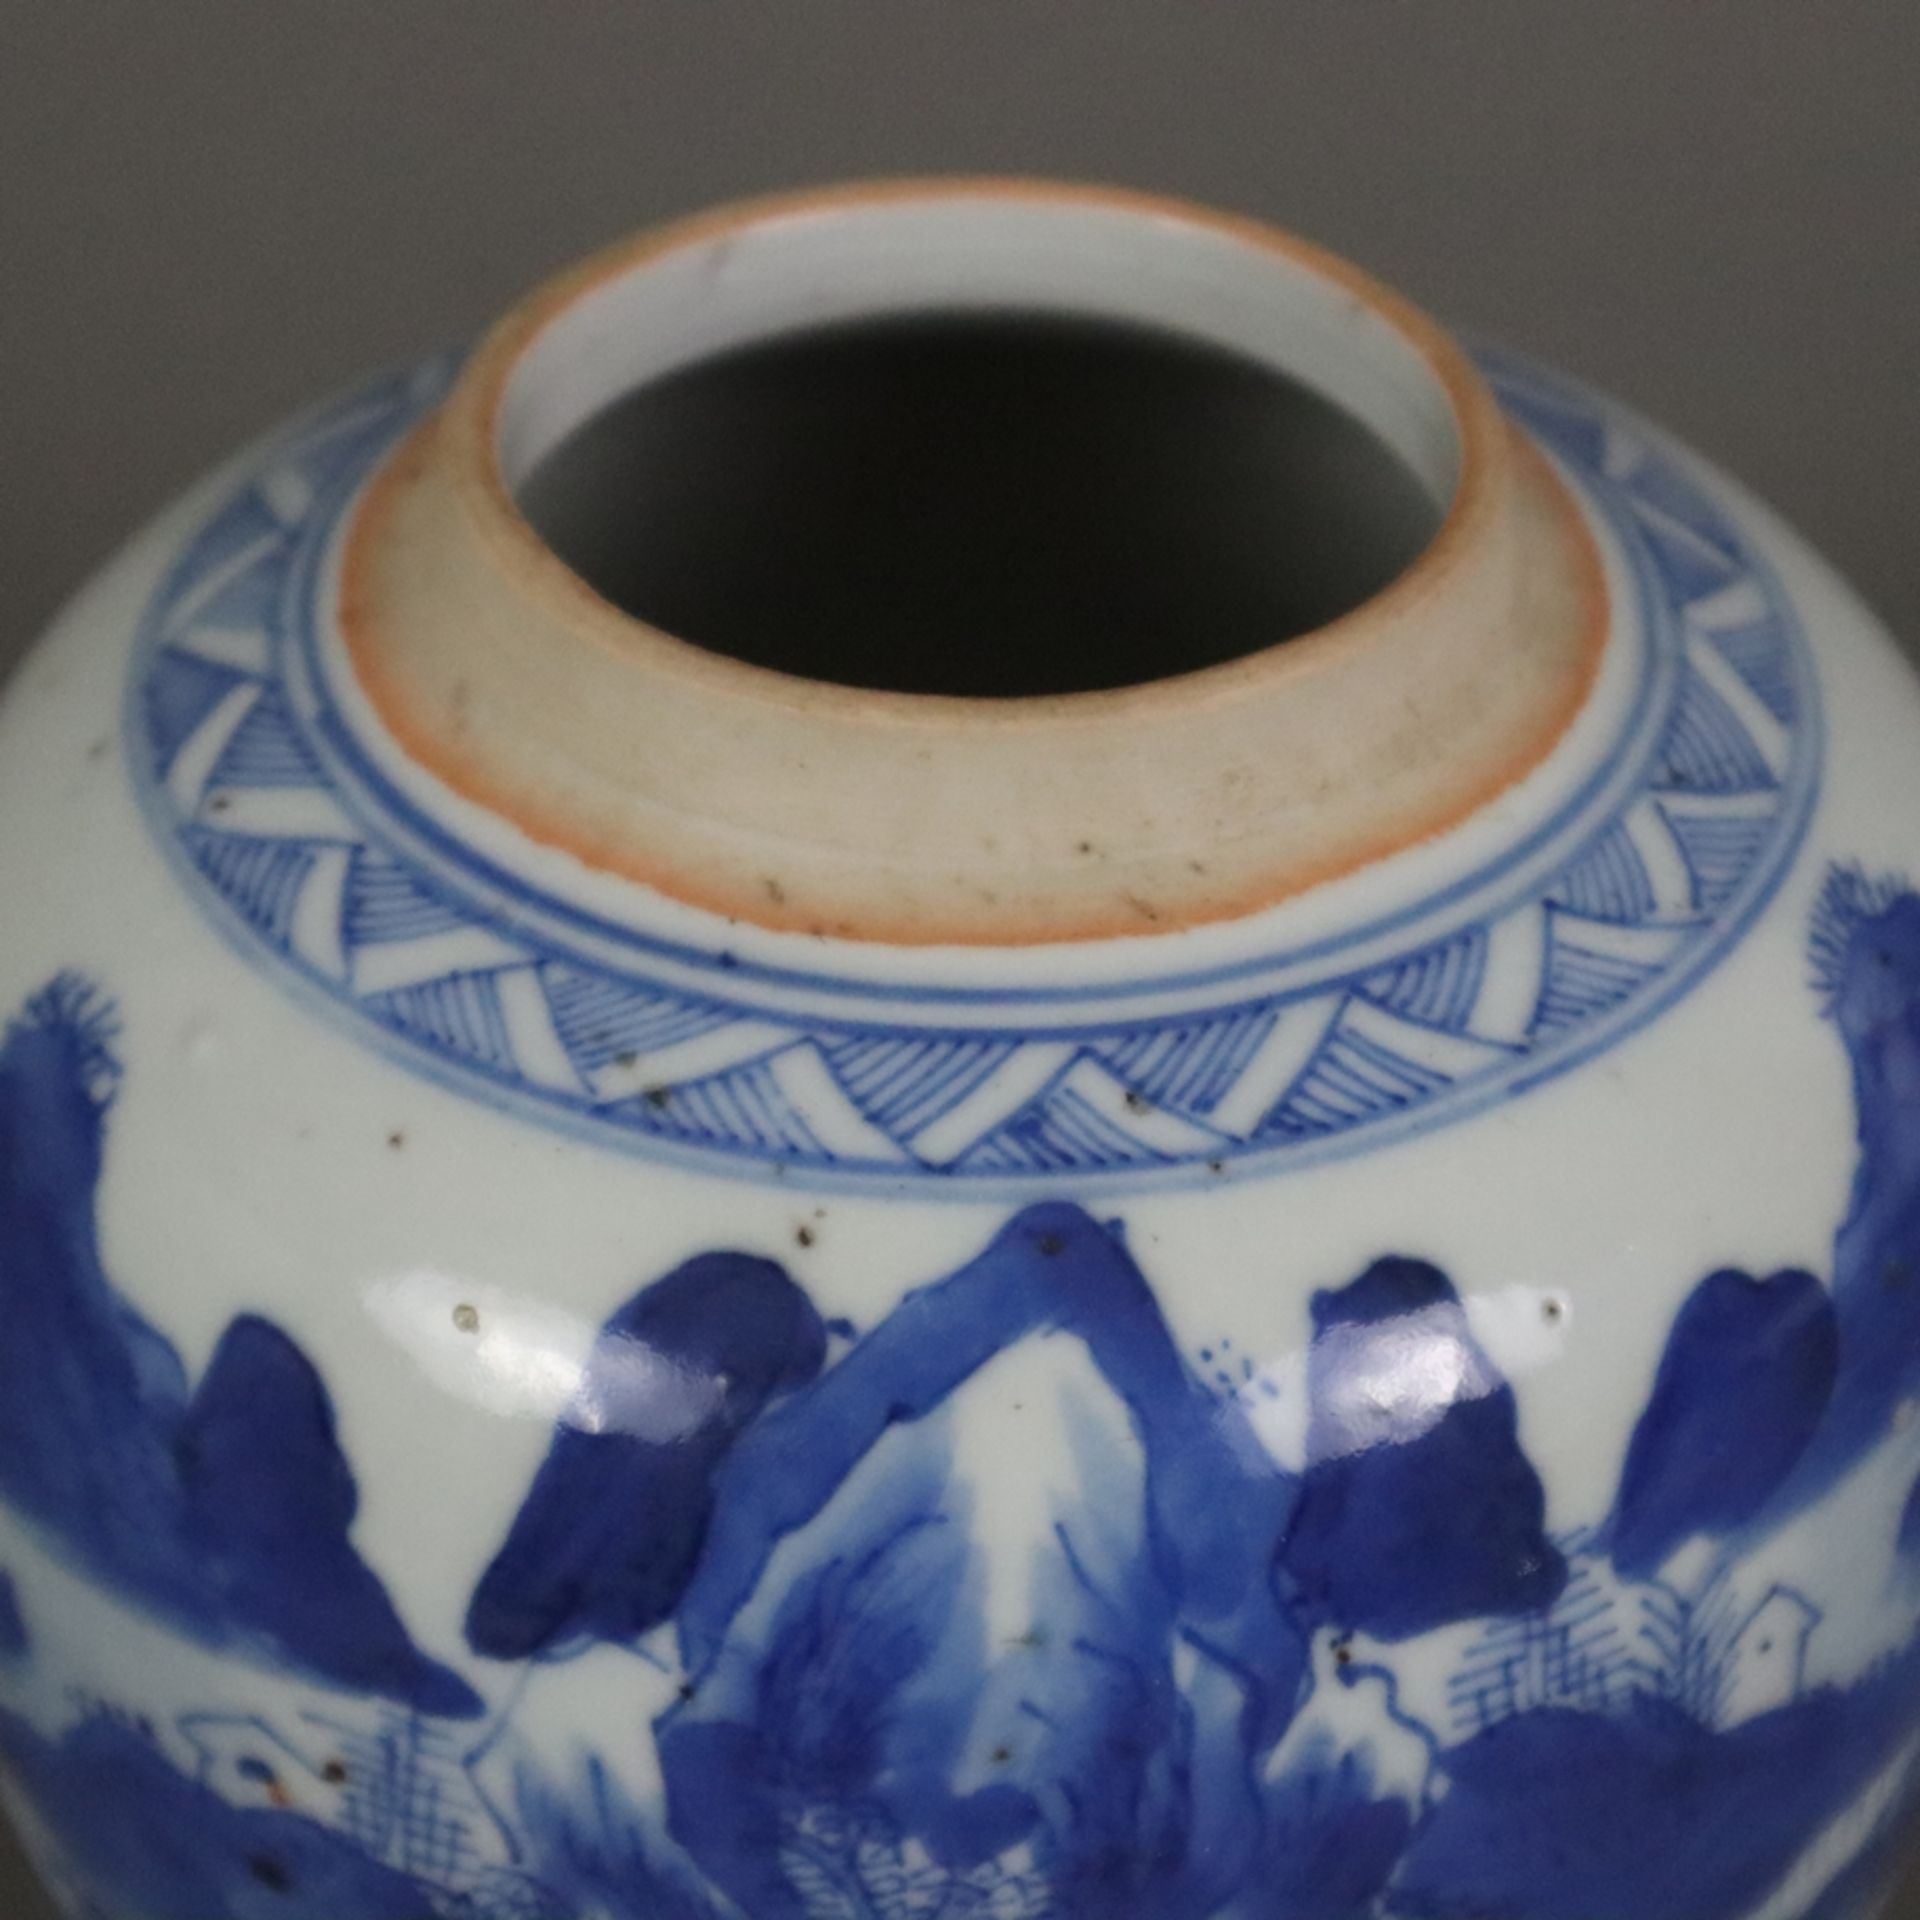 Kleiner Blau-Weiß-Deckeltopf - China, späte Qing-Dynastie, Porzellan, auf der Wandung Shan-Shui-Lan - Image 2 of 10